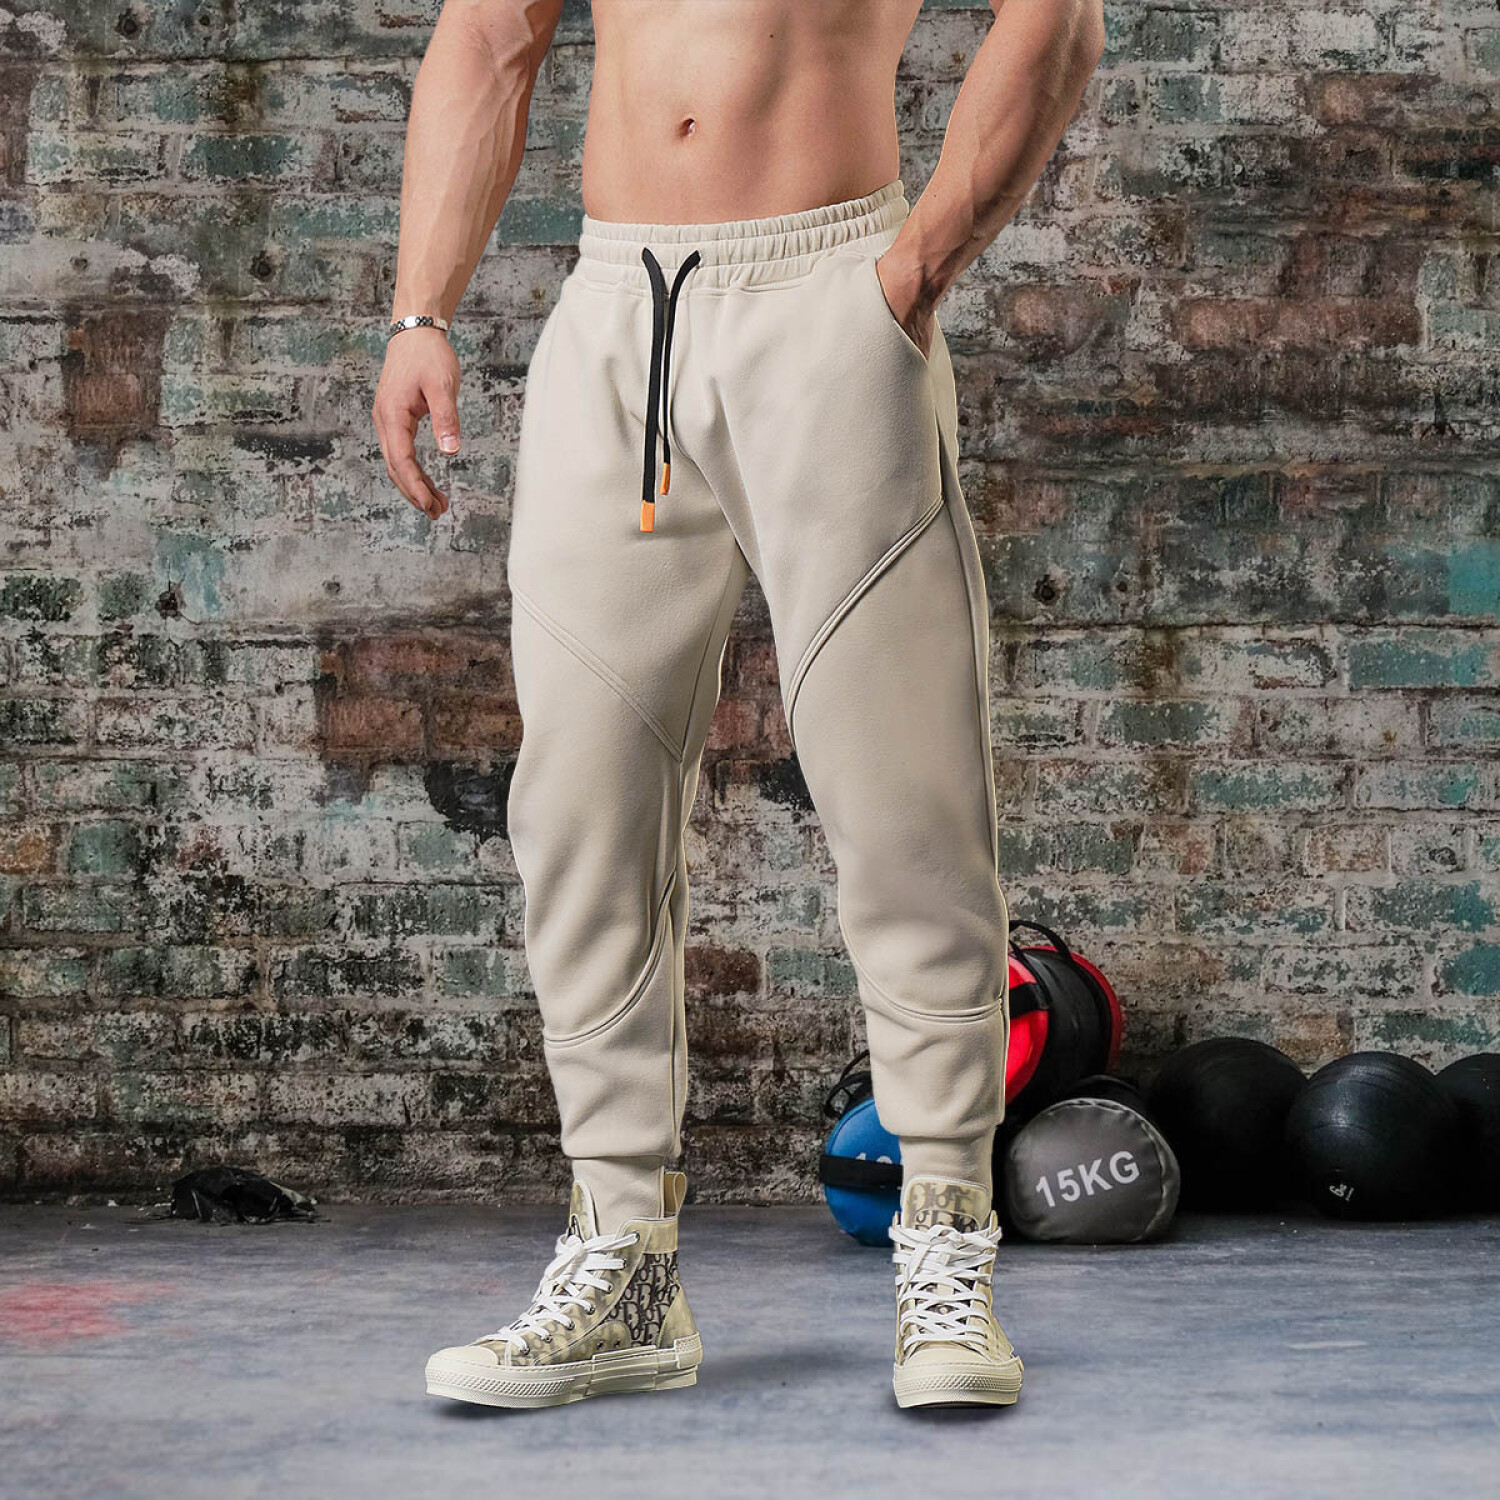 Pantalones deporte hombre: encuentra los mejores pantalones deportivos –  depor8